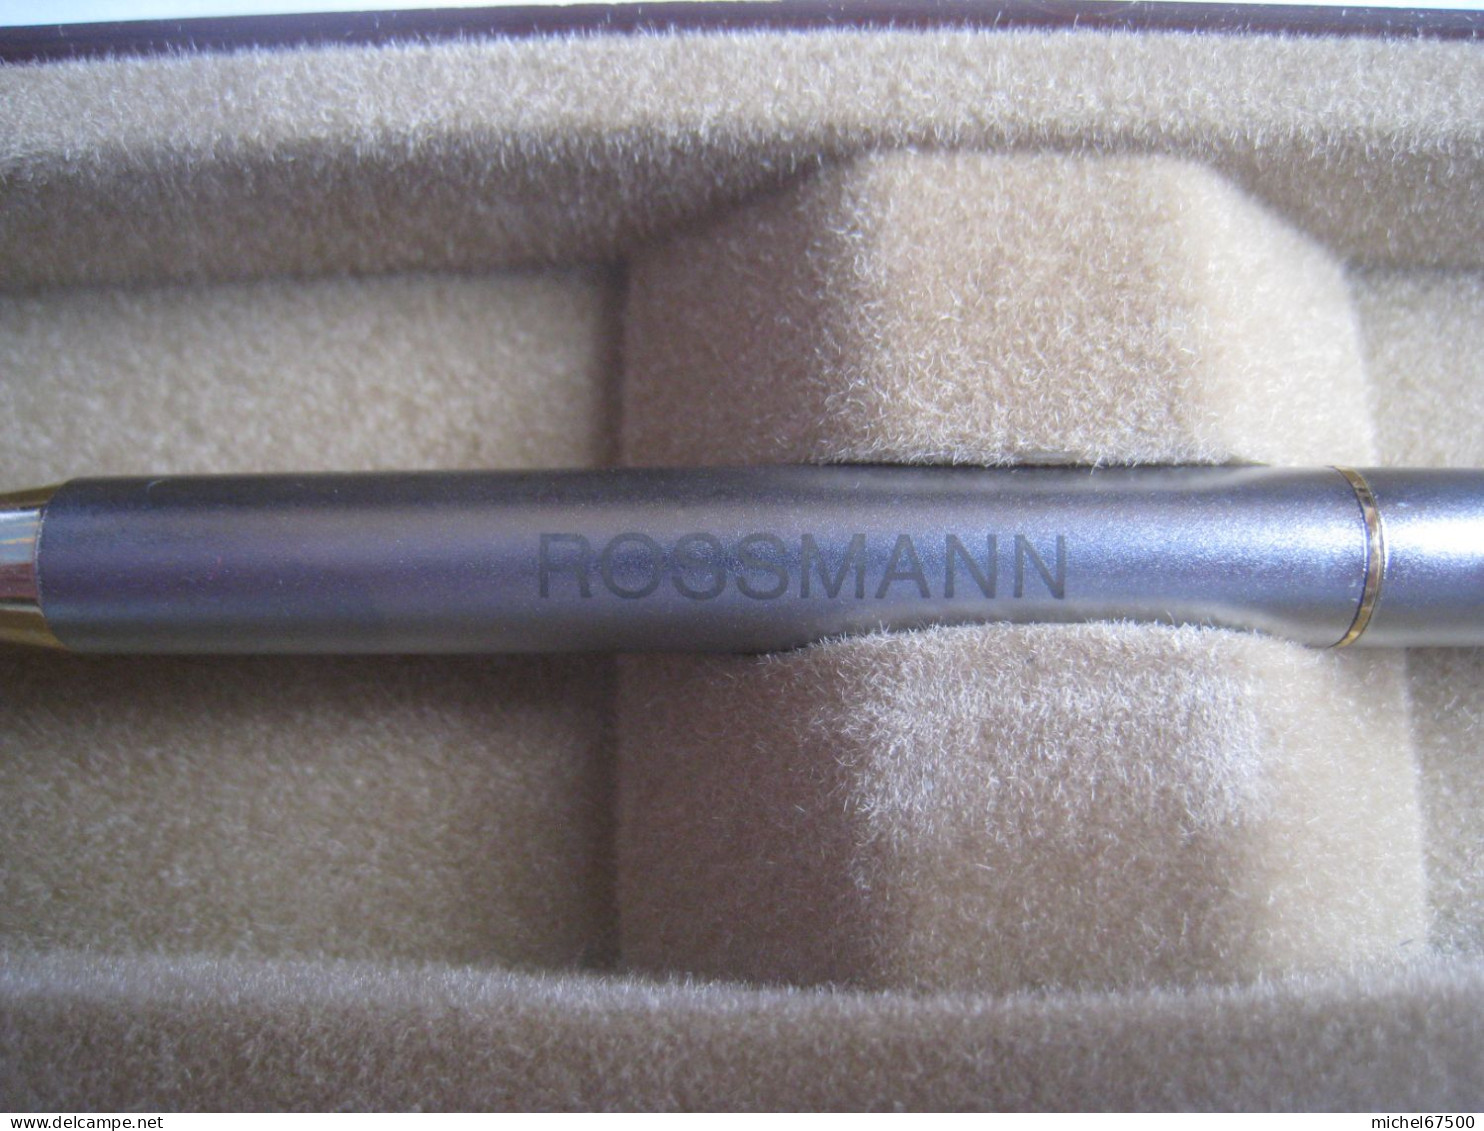 ROSSMANN - STYLO PUBLICITAIRE - Penne